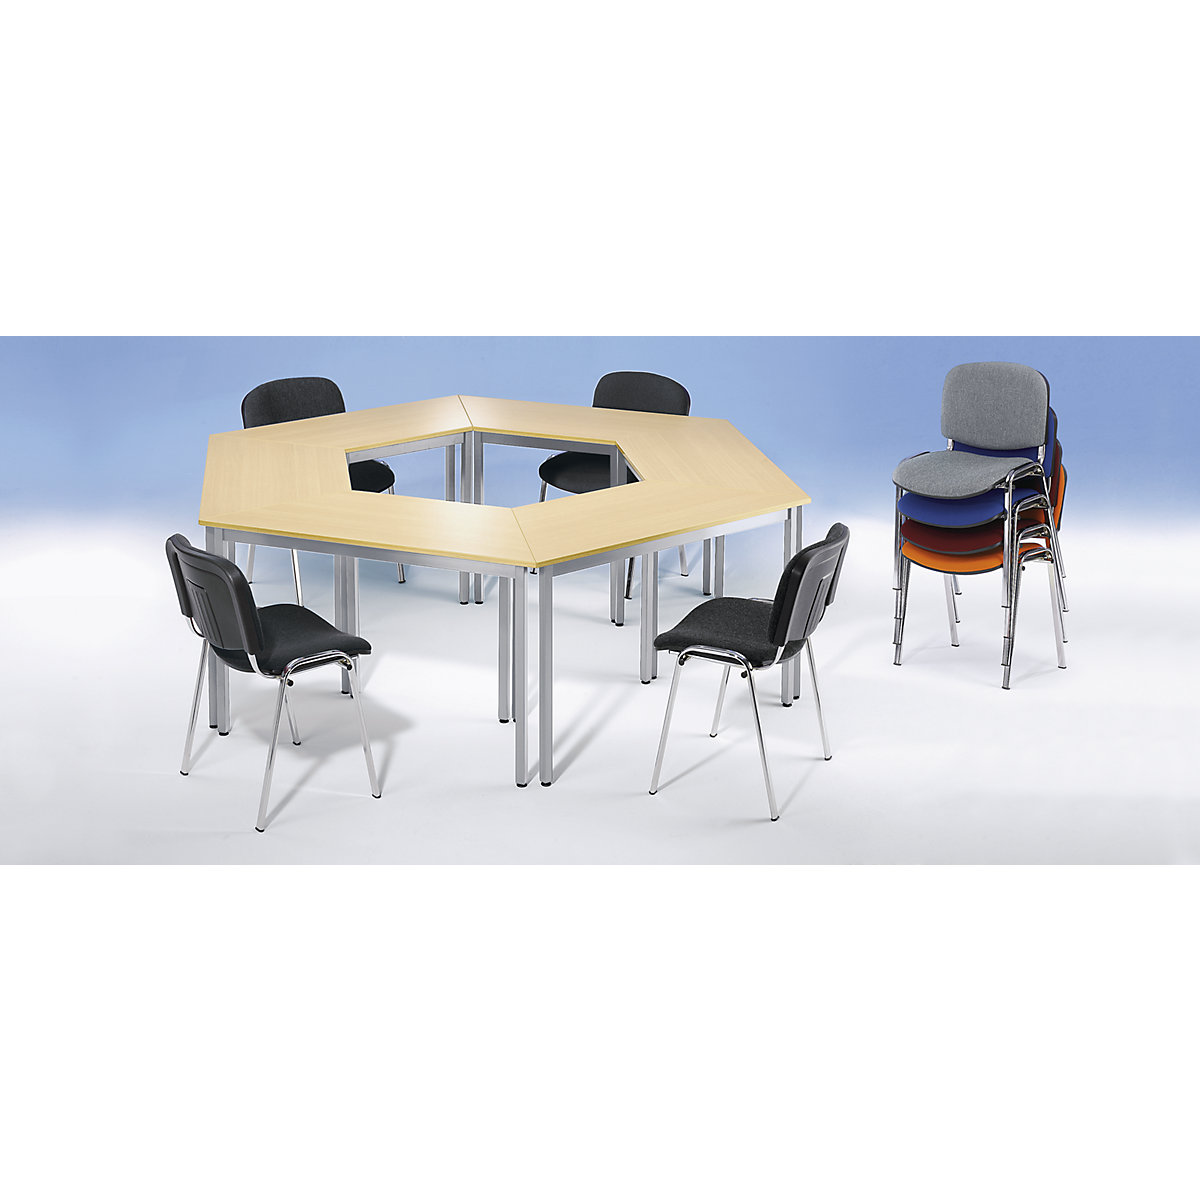 Víceúčelový stůl – eurokraft basic, lichoběžníkový tvar, v x š x h 740 x 1400 x 700 mm, deska v bukovém dekoru, podstavec černý-1